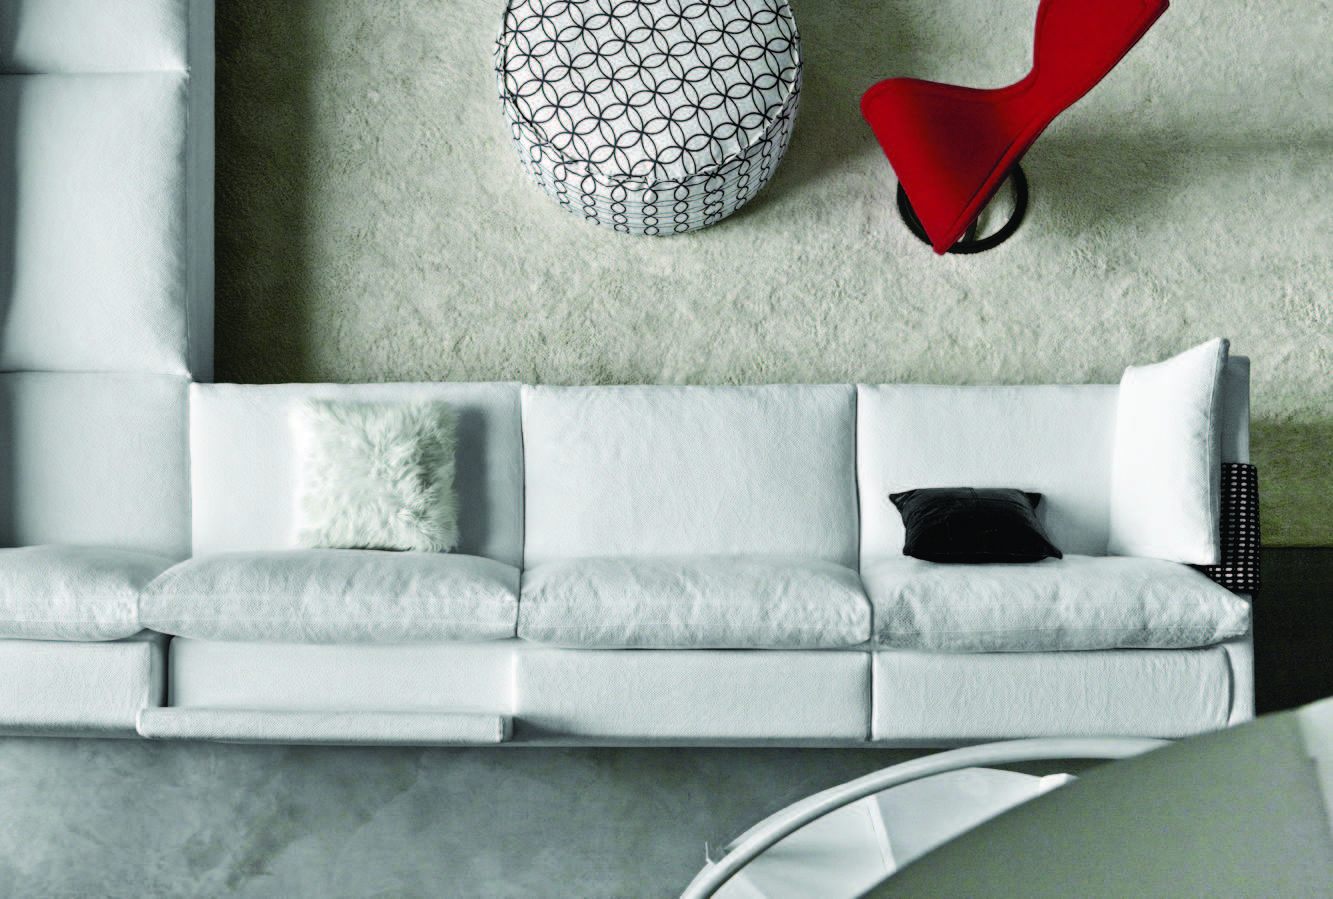 Il divano Reef è una composizione di volumi ampi e sottili che suscitano una sensazione di dinamismo e leggerezza.